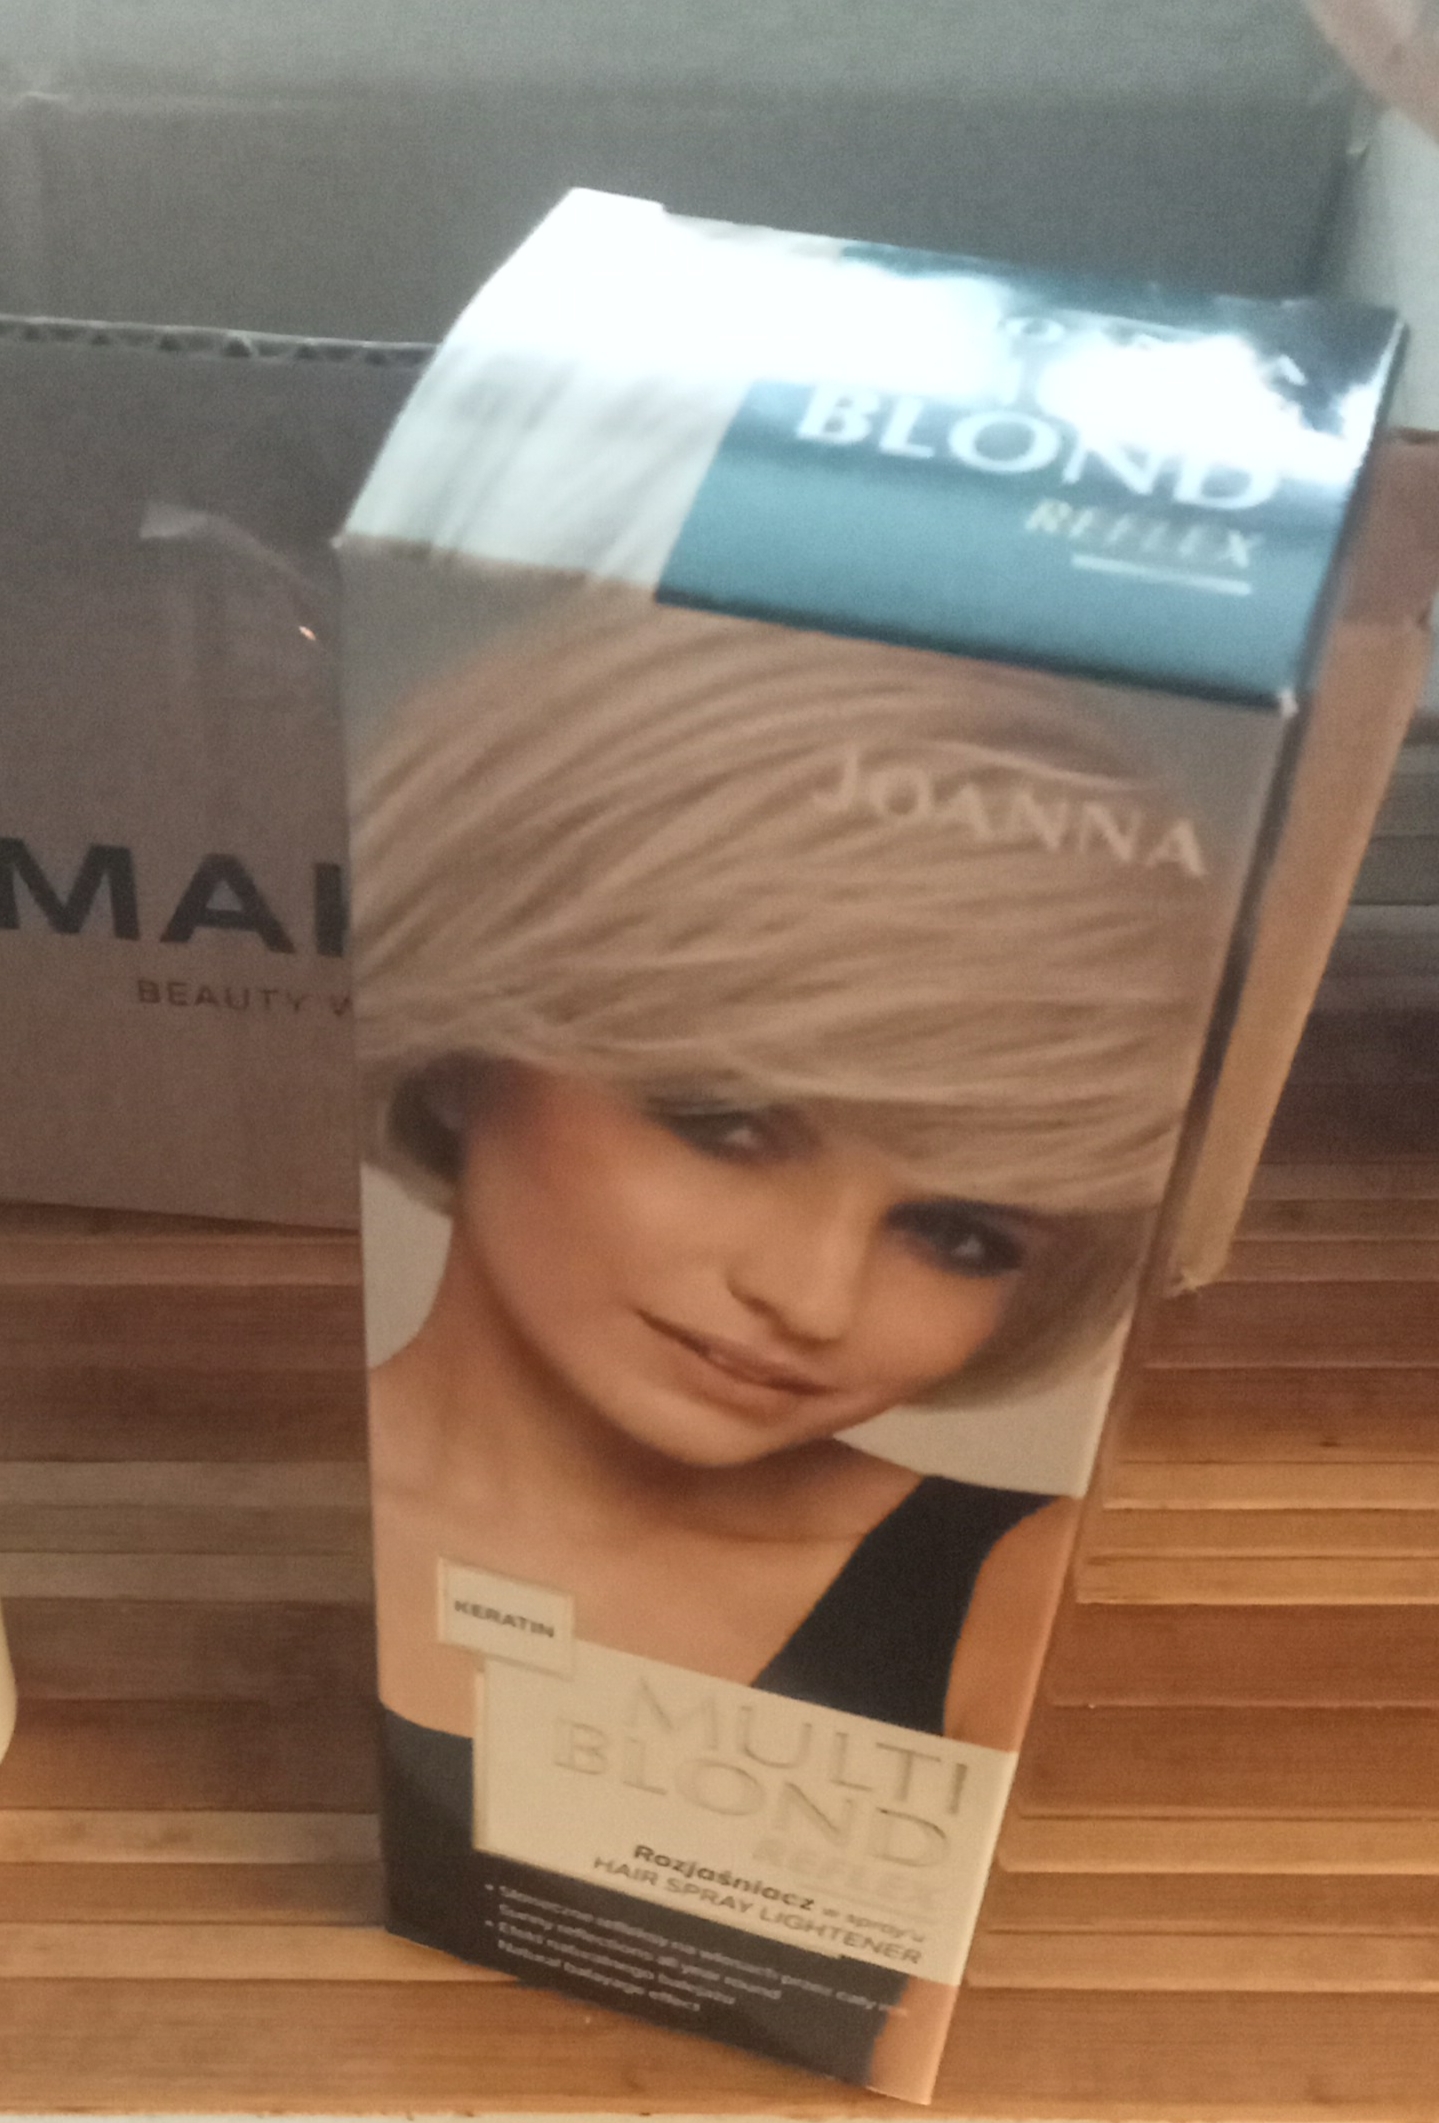 Johanna Multi Blond - спрей для освітлення волосся